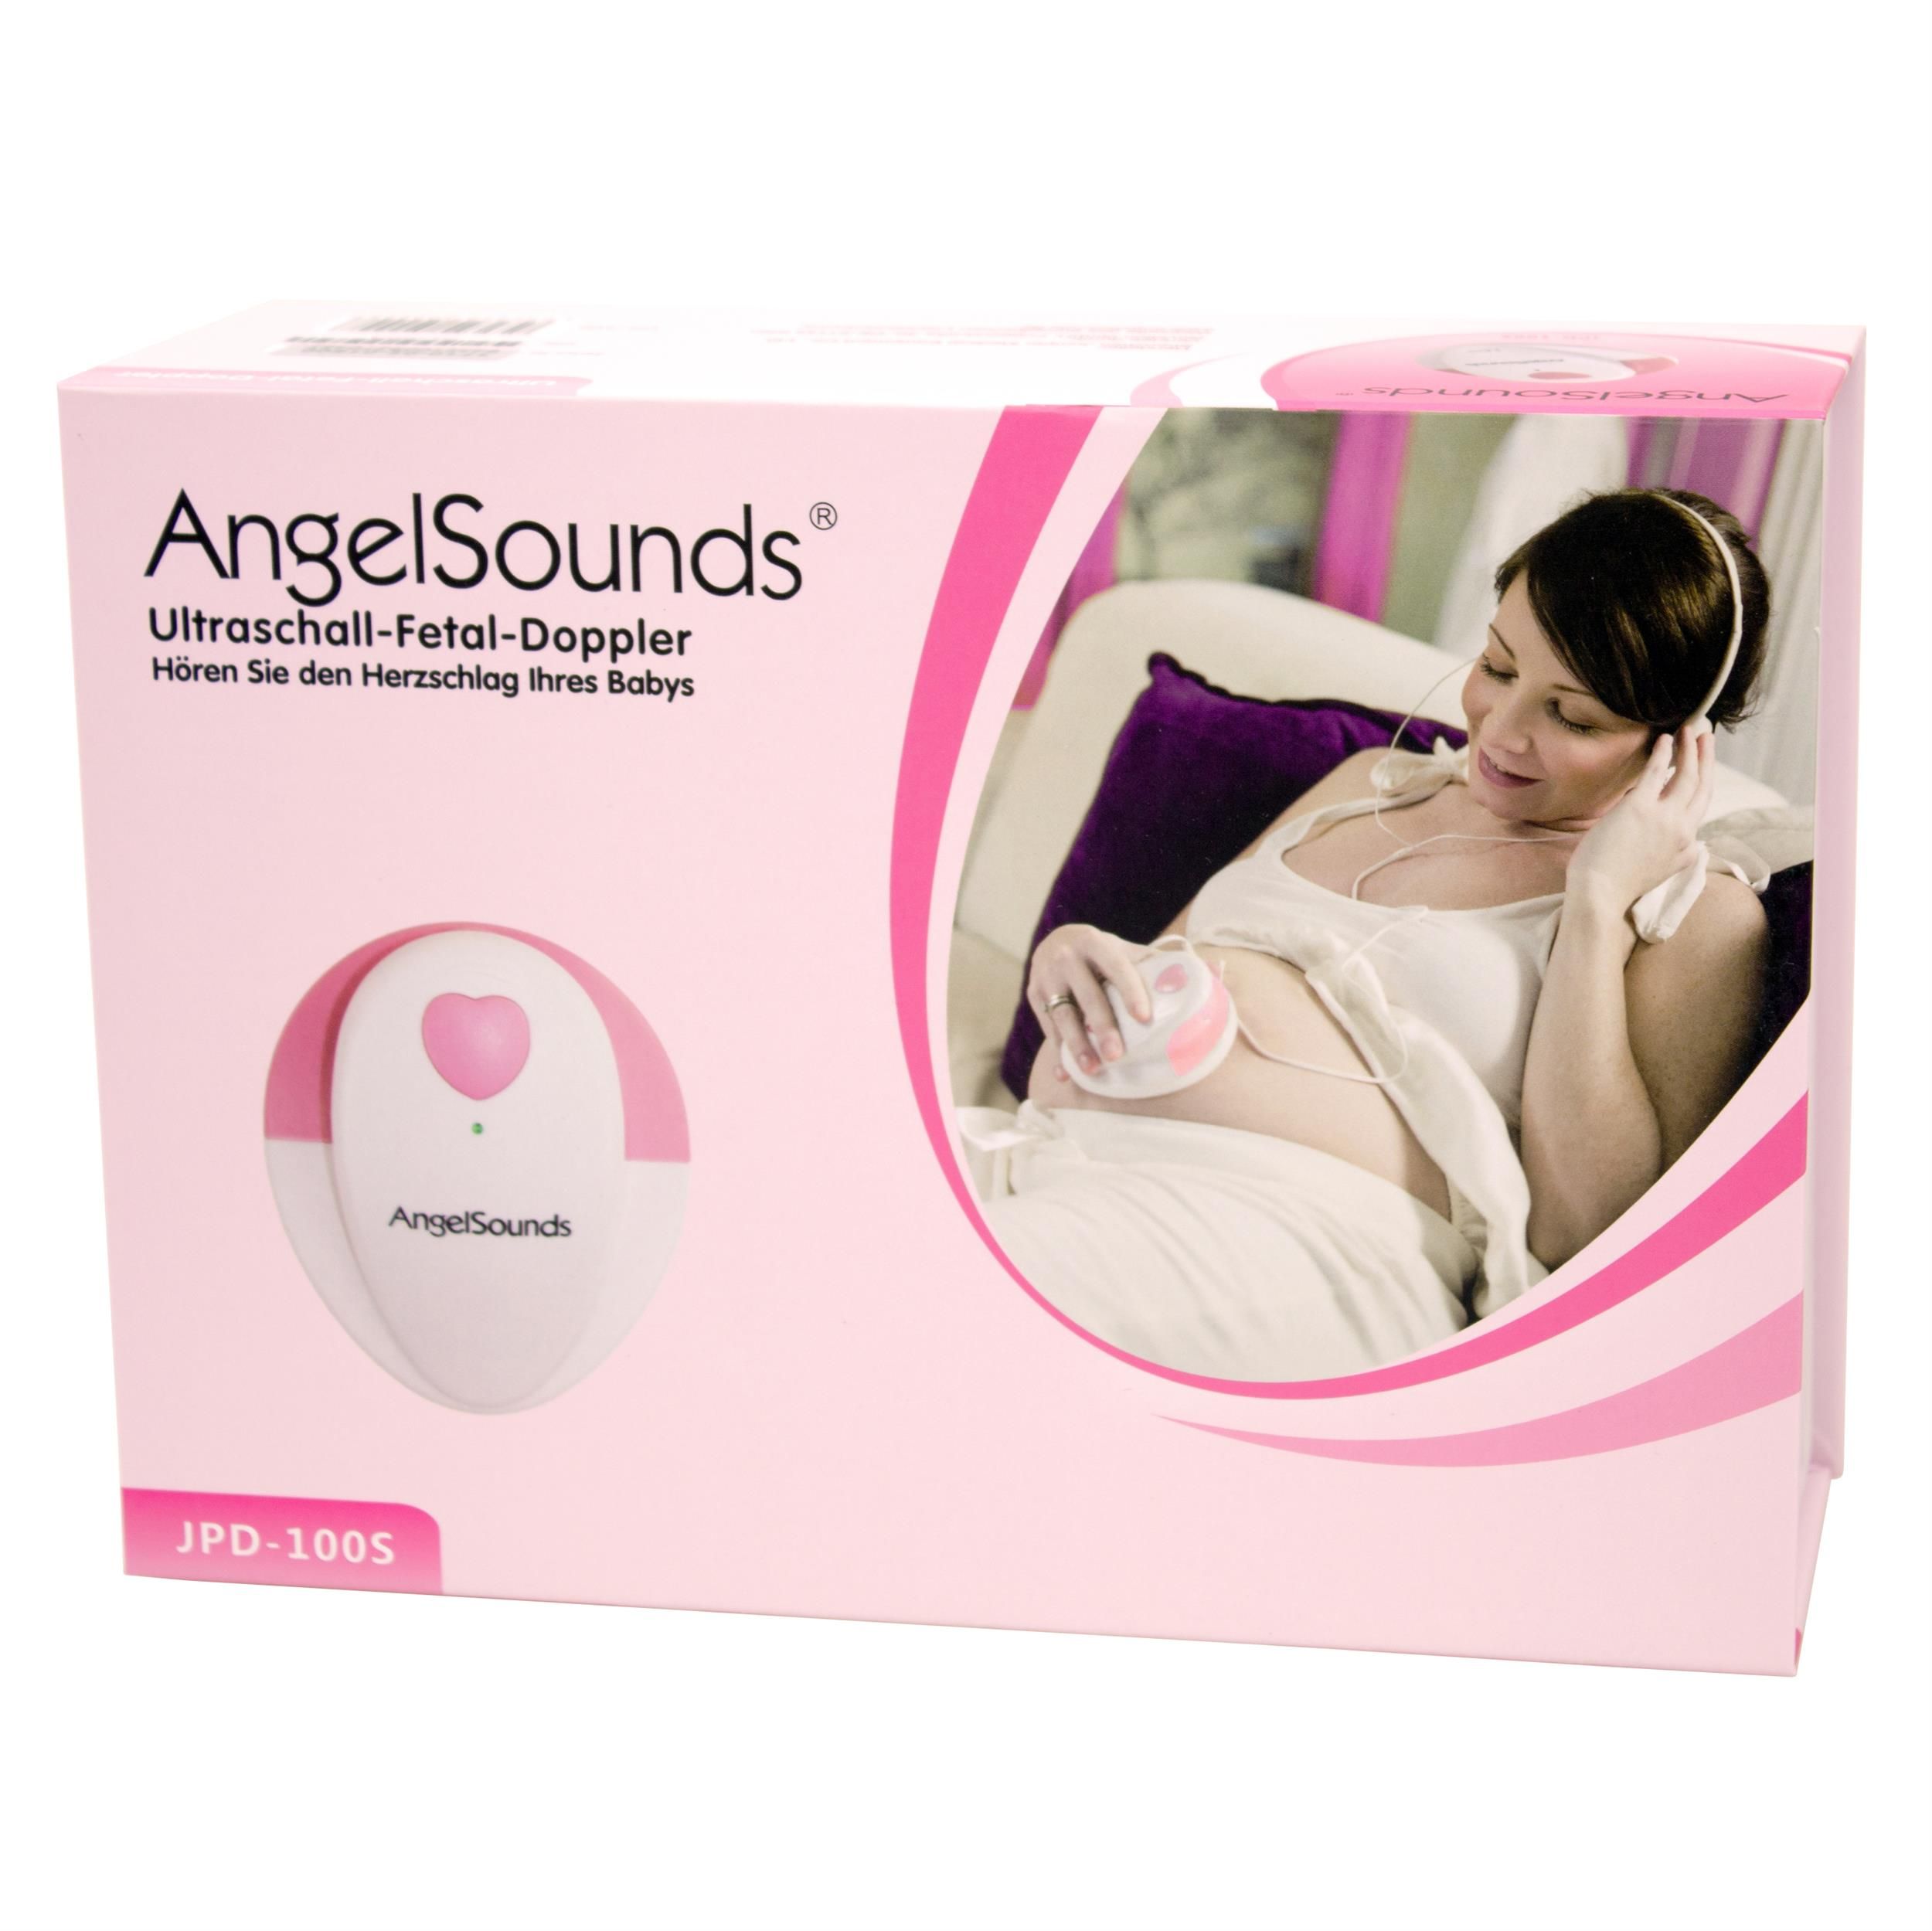 AngelSounds - JPD-100S Set - Ultraschall Fetal-Doppler - Cremeweiß-Pink